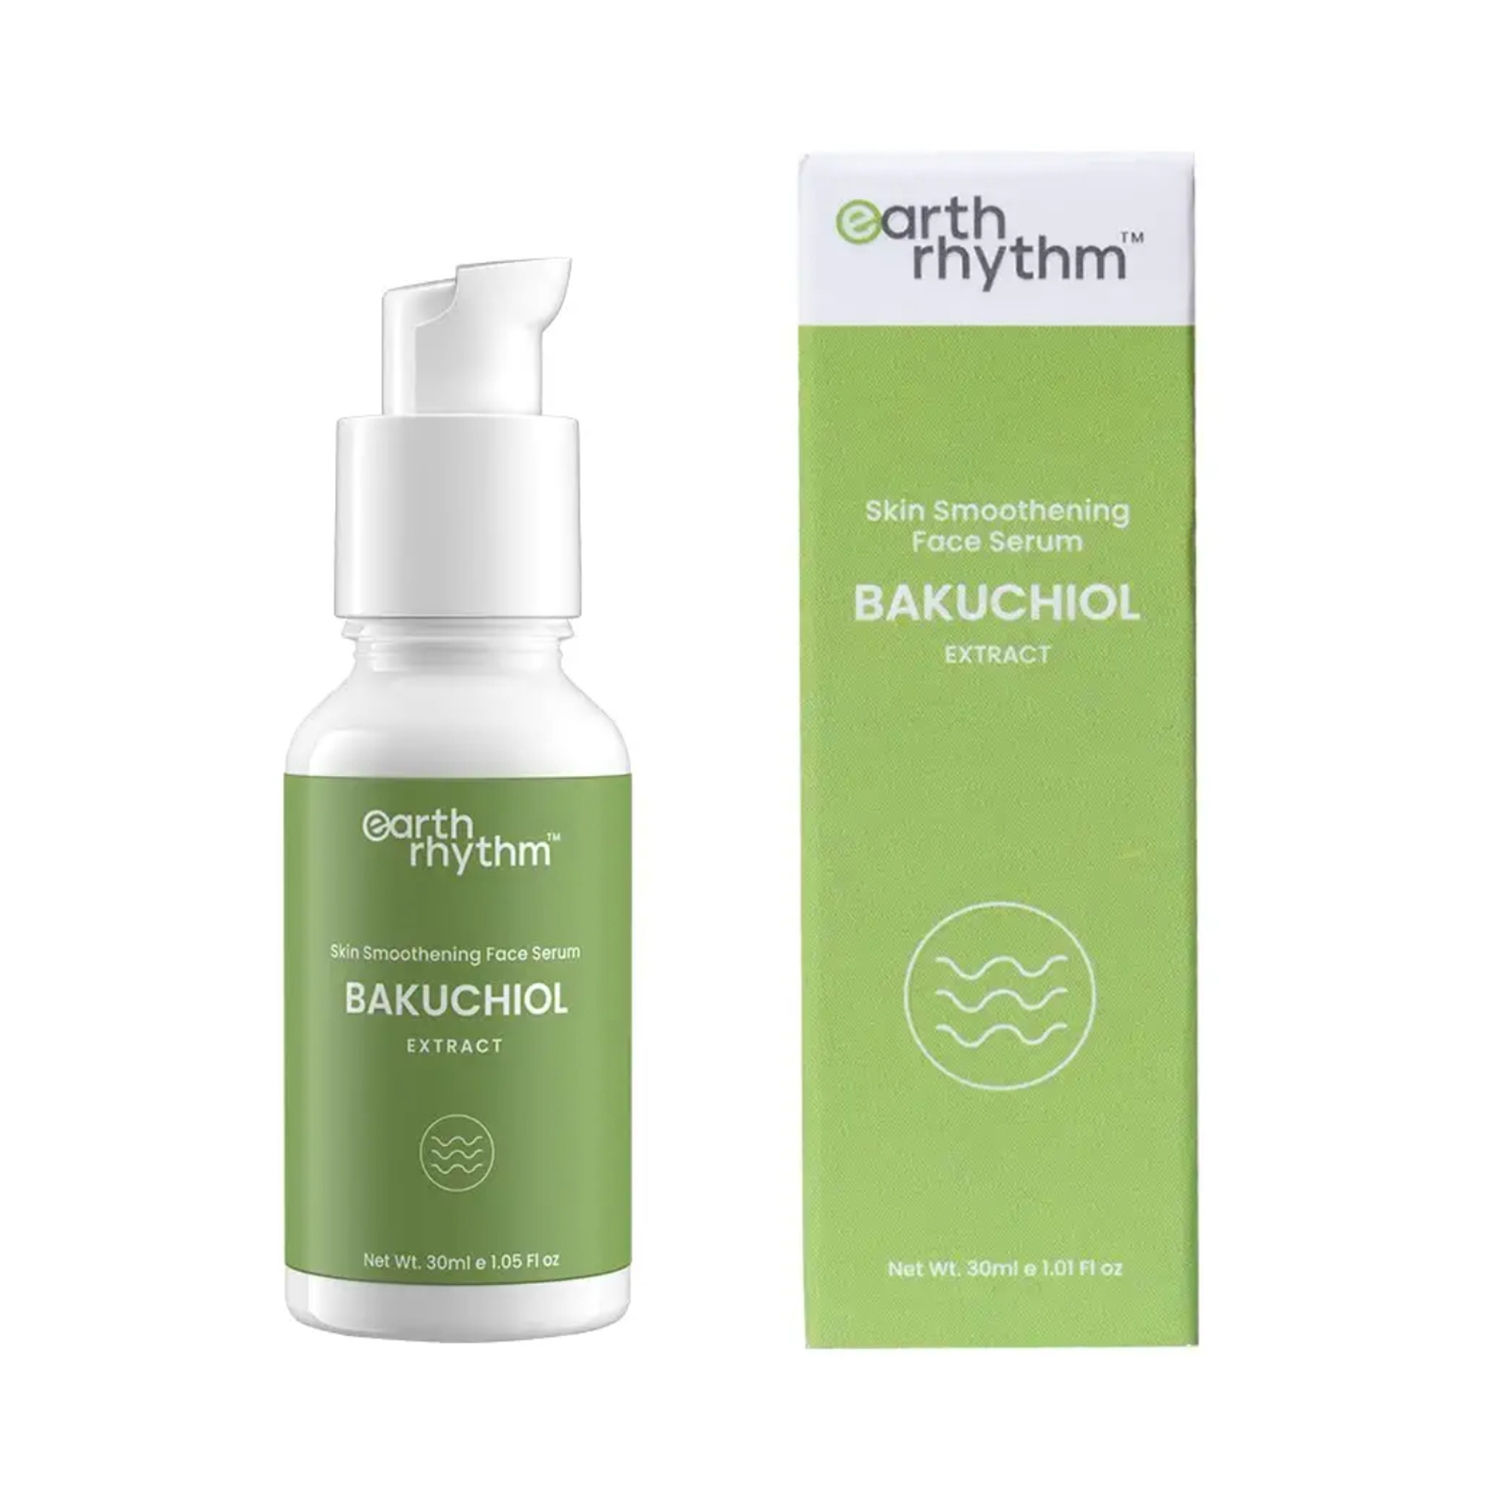 Earth Rhythm | Earth Rhythm Skin Smoothening Bakuchiol Extract Serum - ( 30ml)